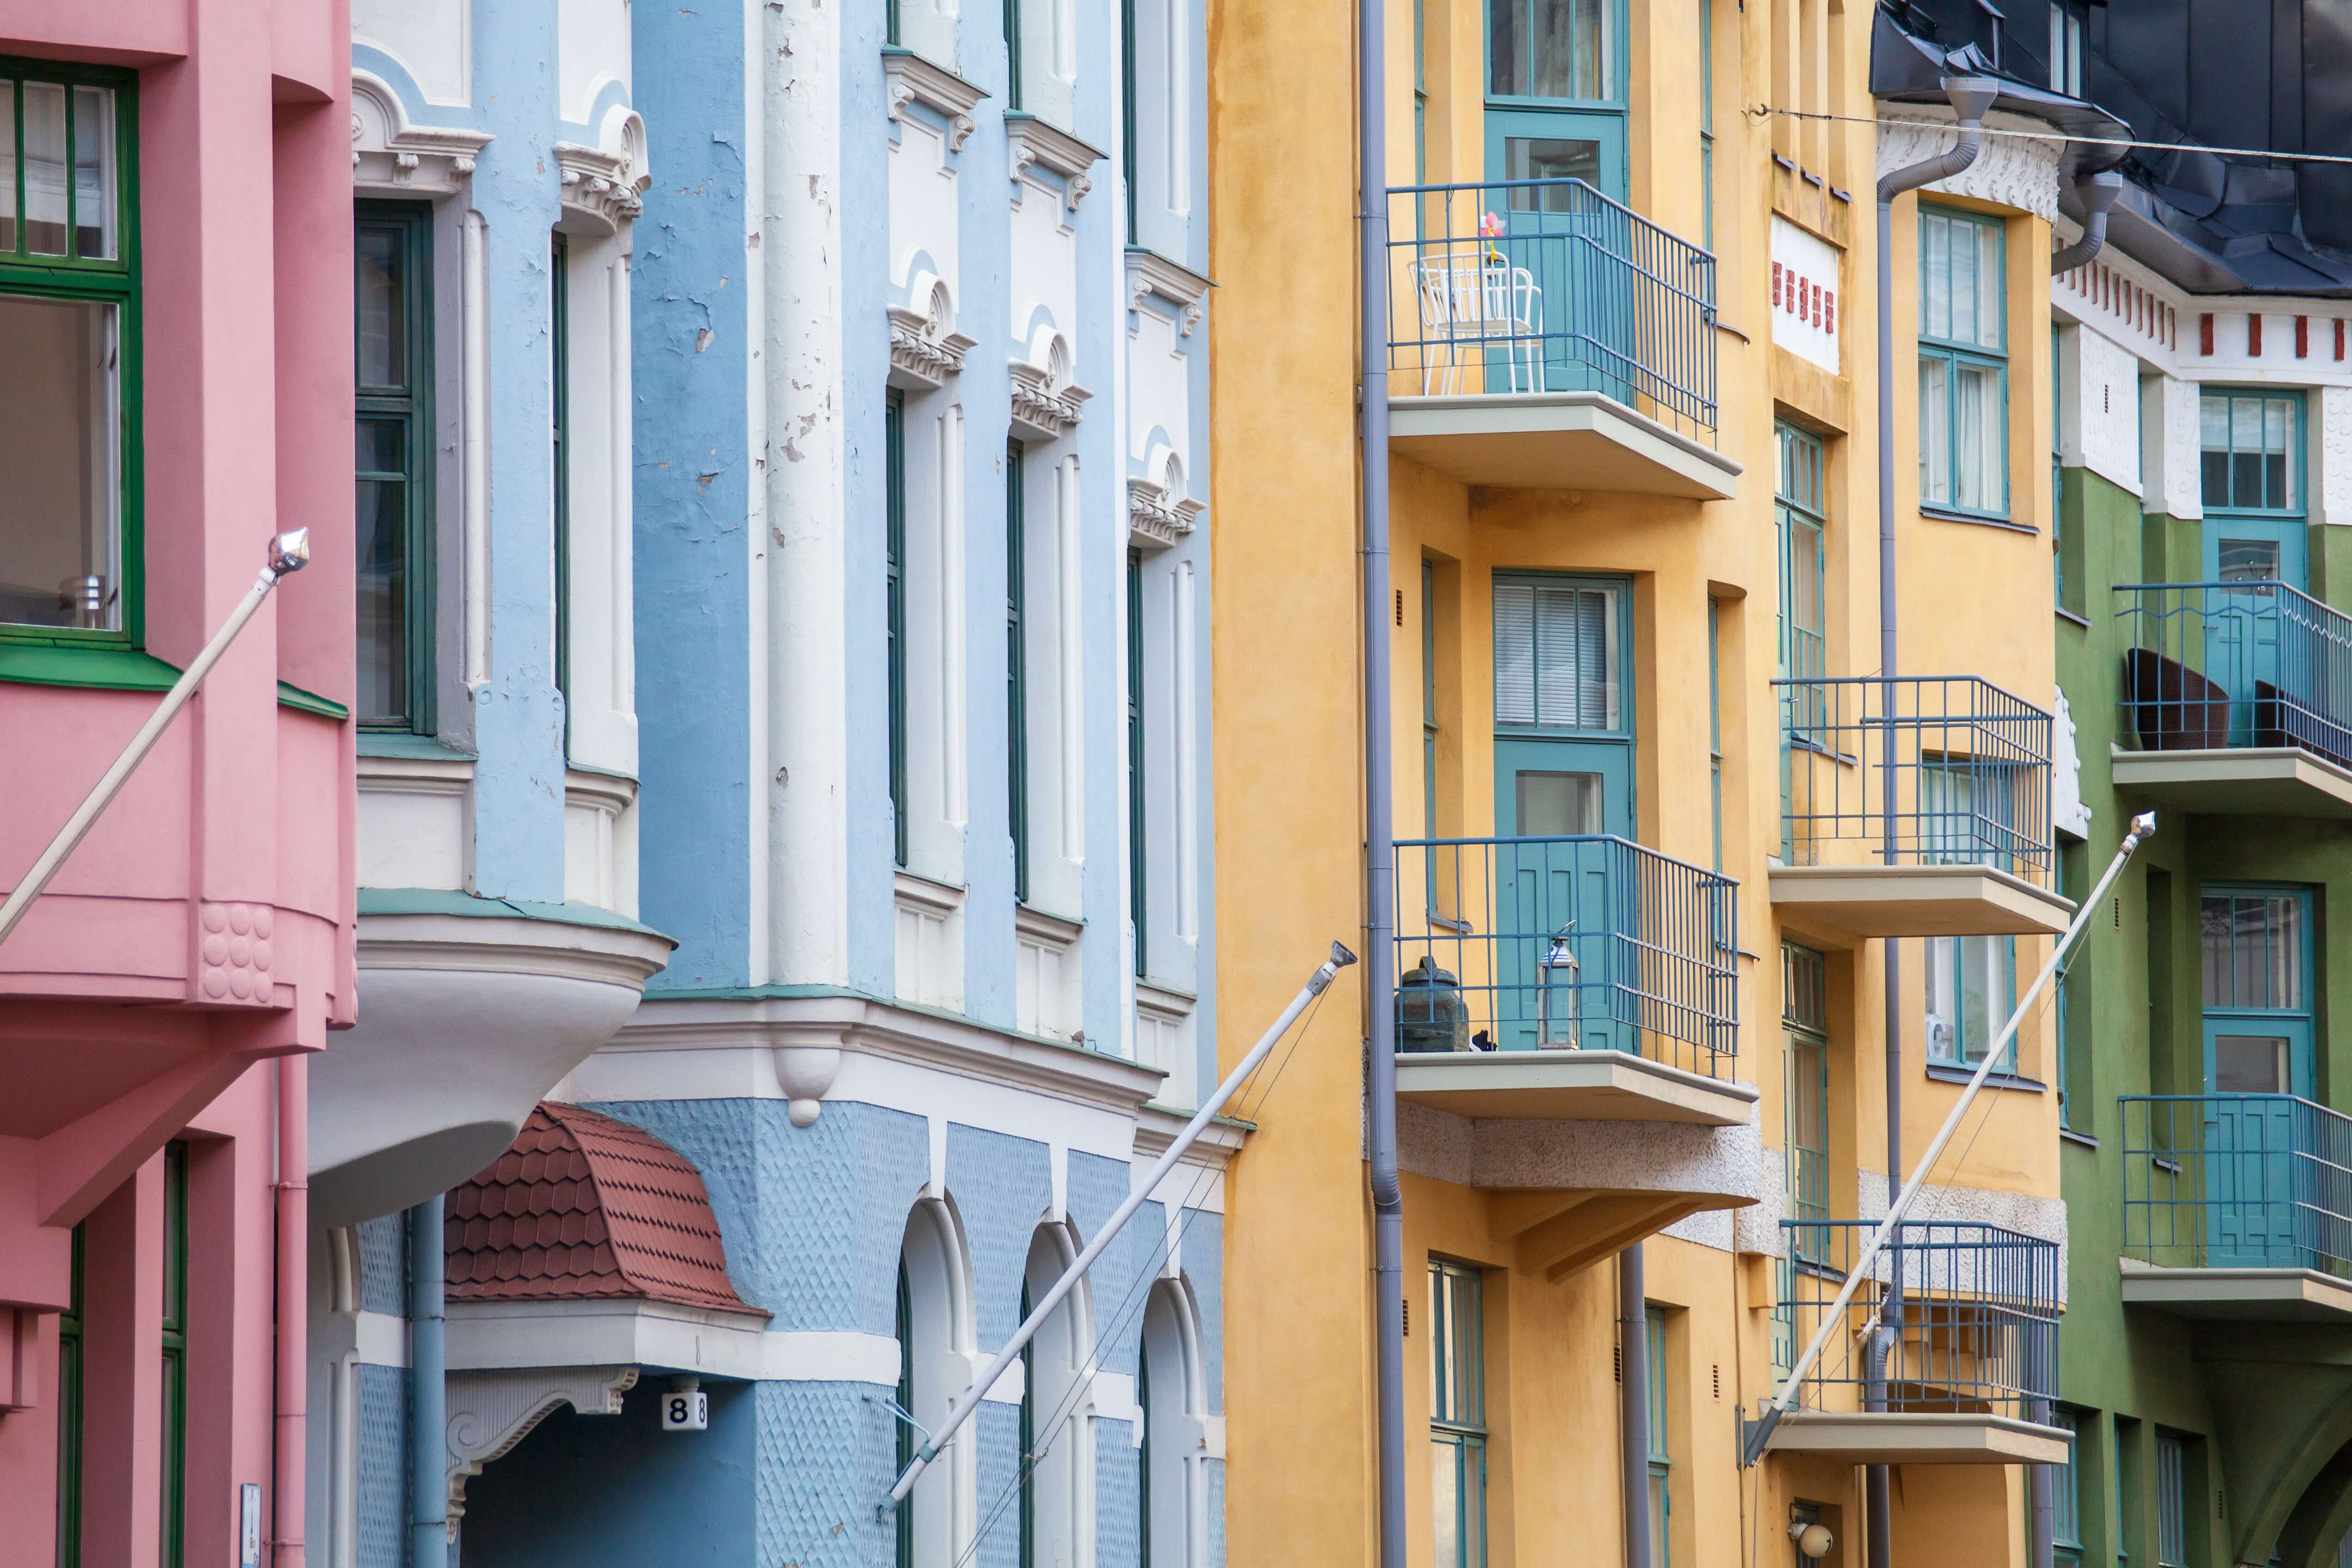 Street in helsinki colourful buildings